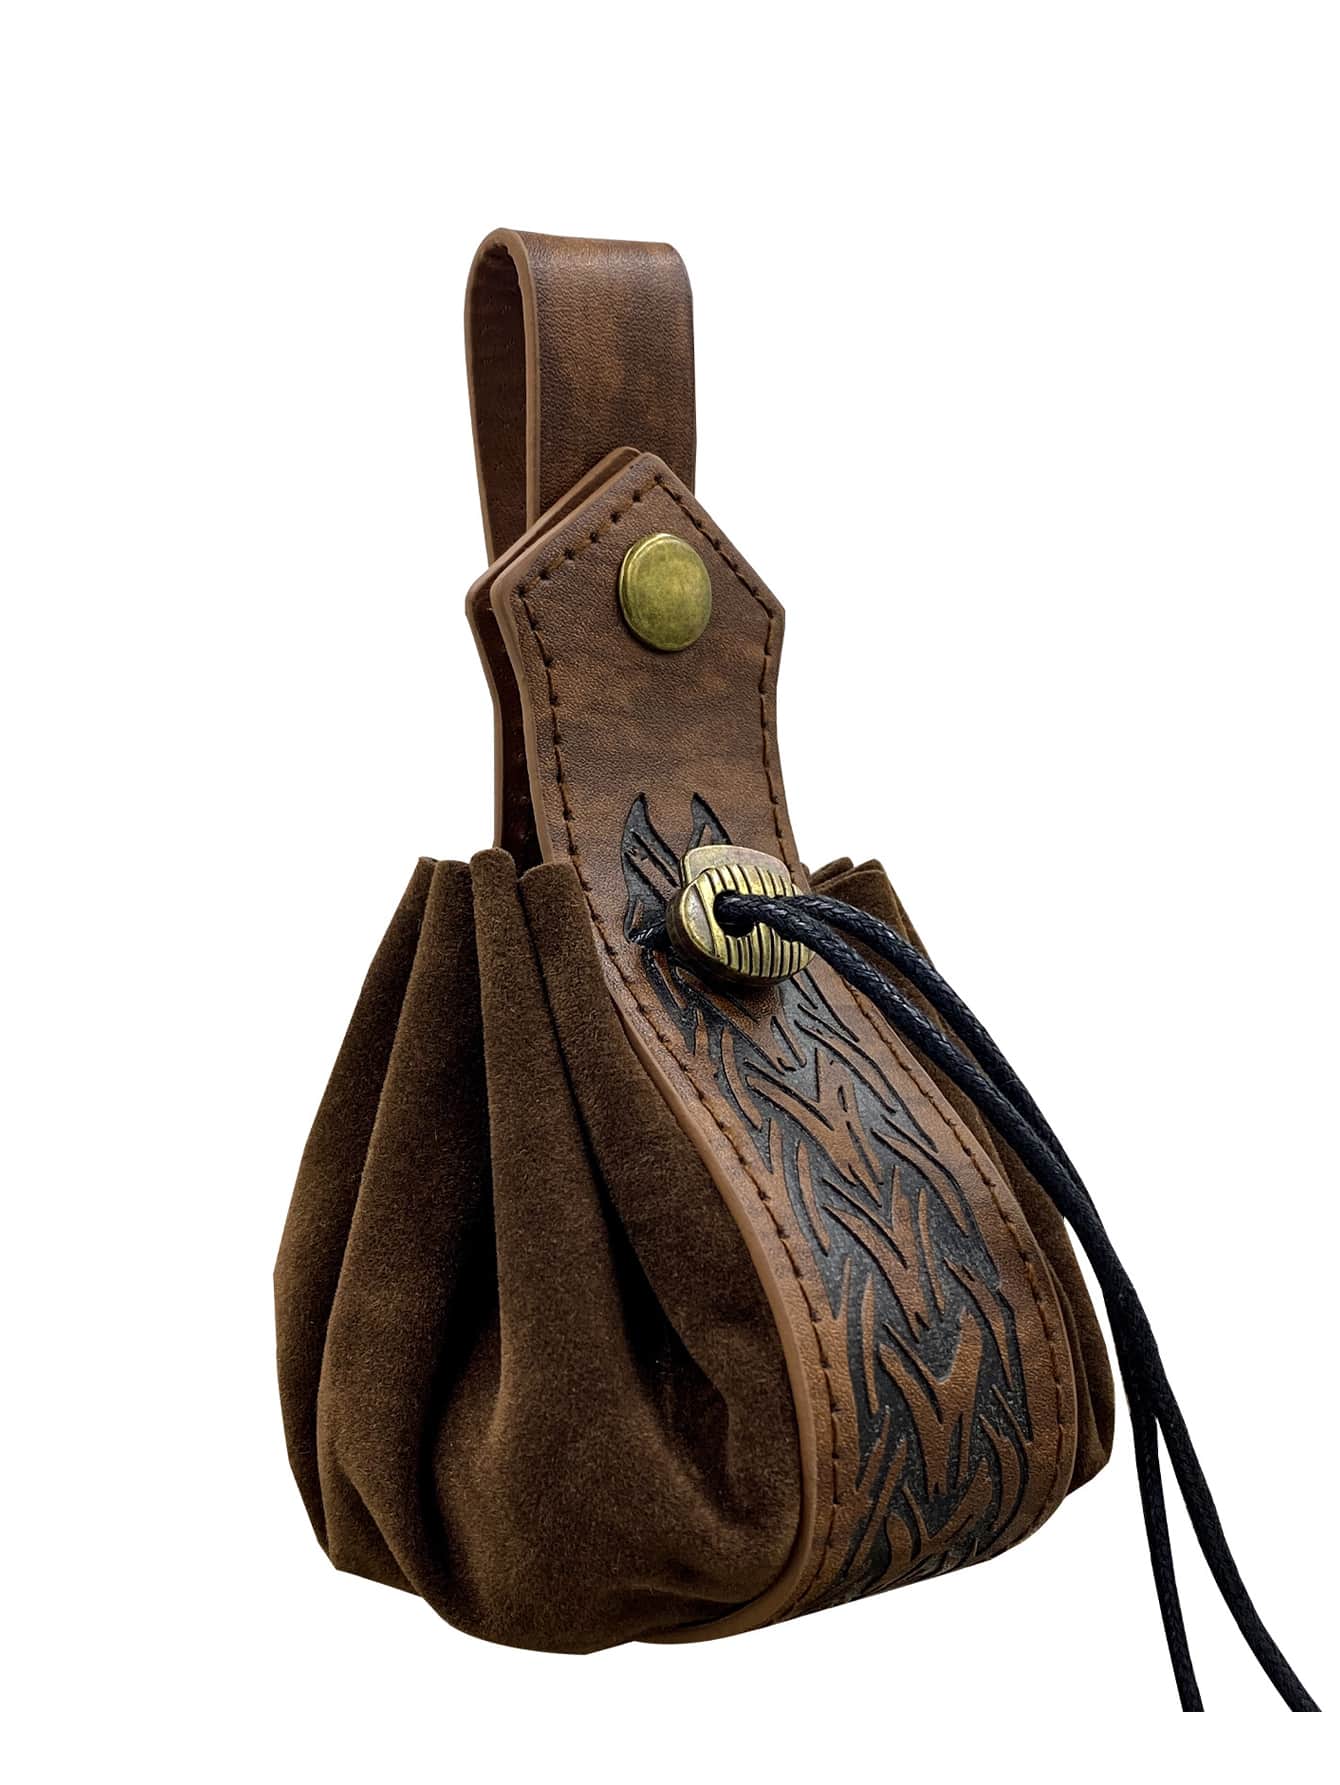 1 шт. средневековый винтажный портативный кошелек в стиле викингов, коричневый